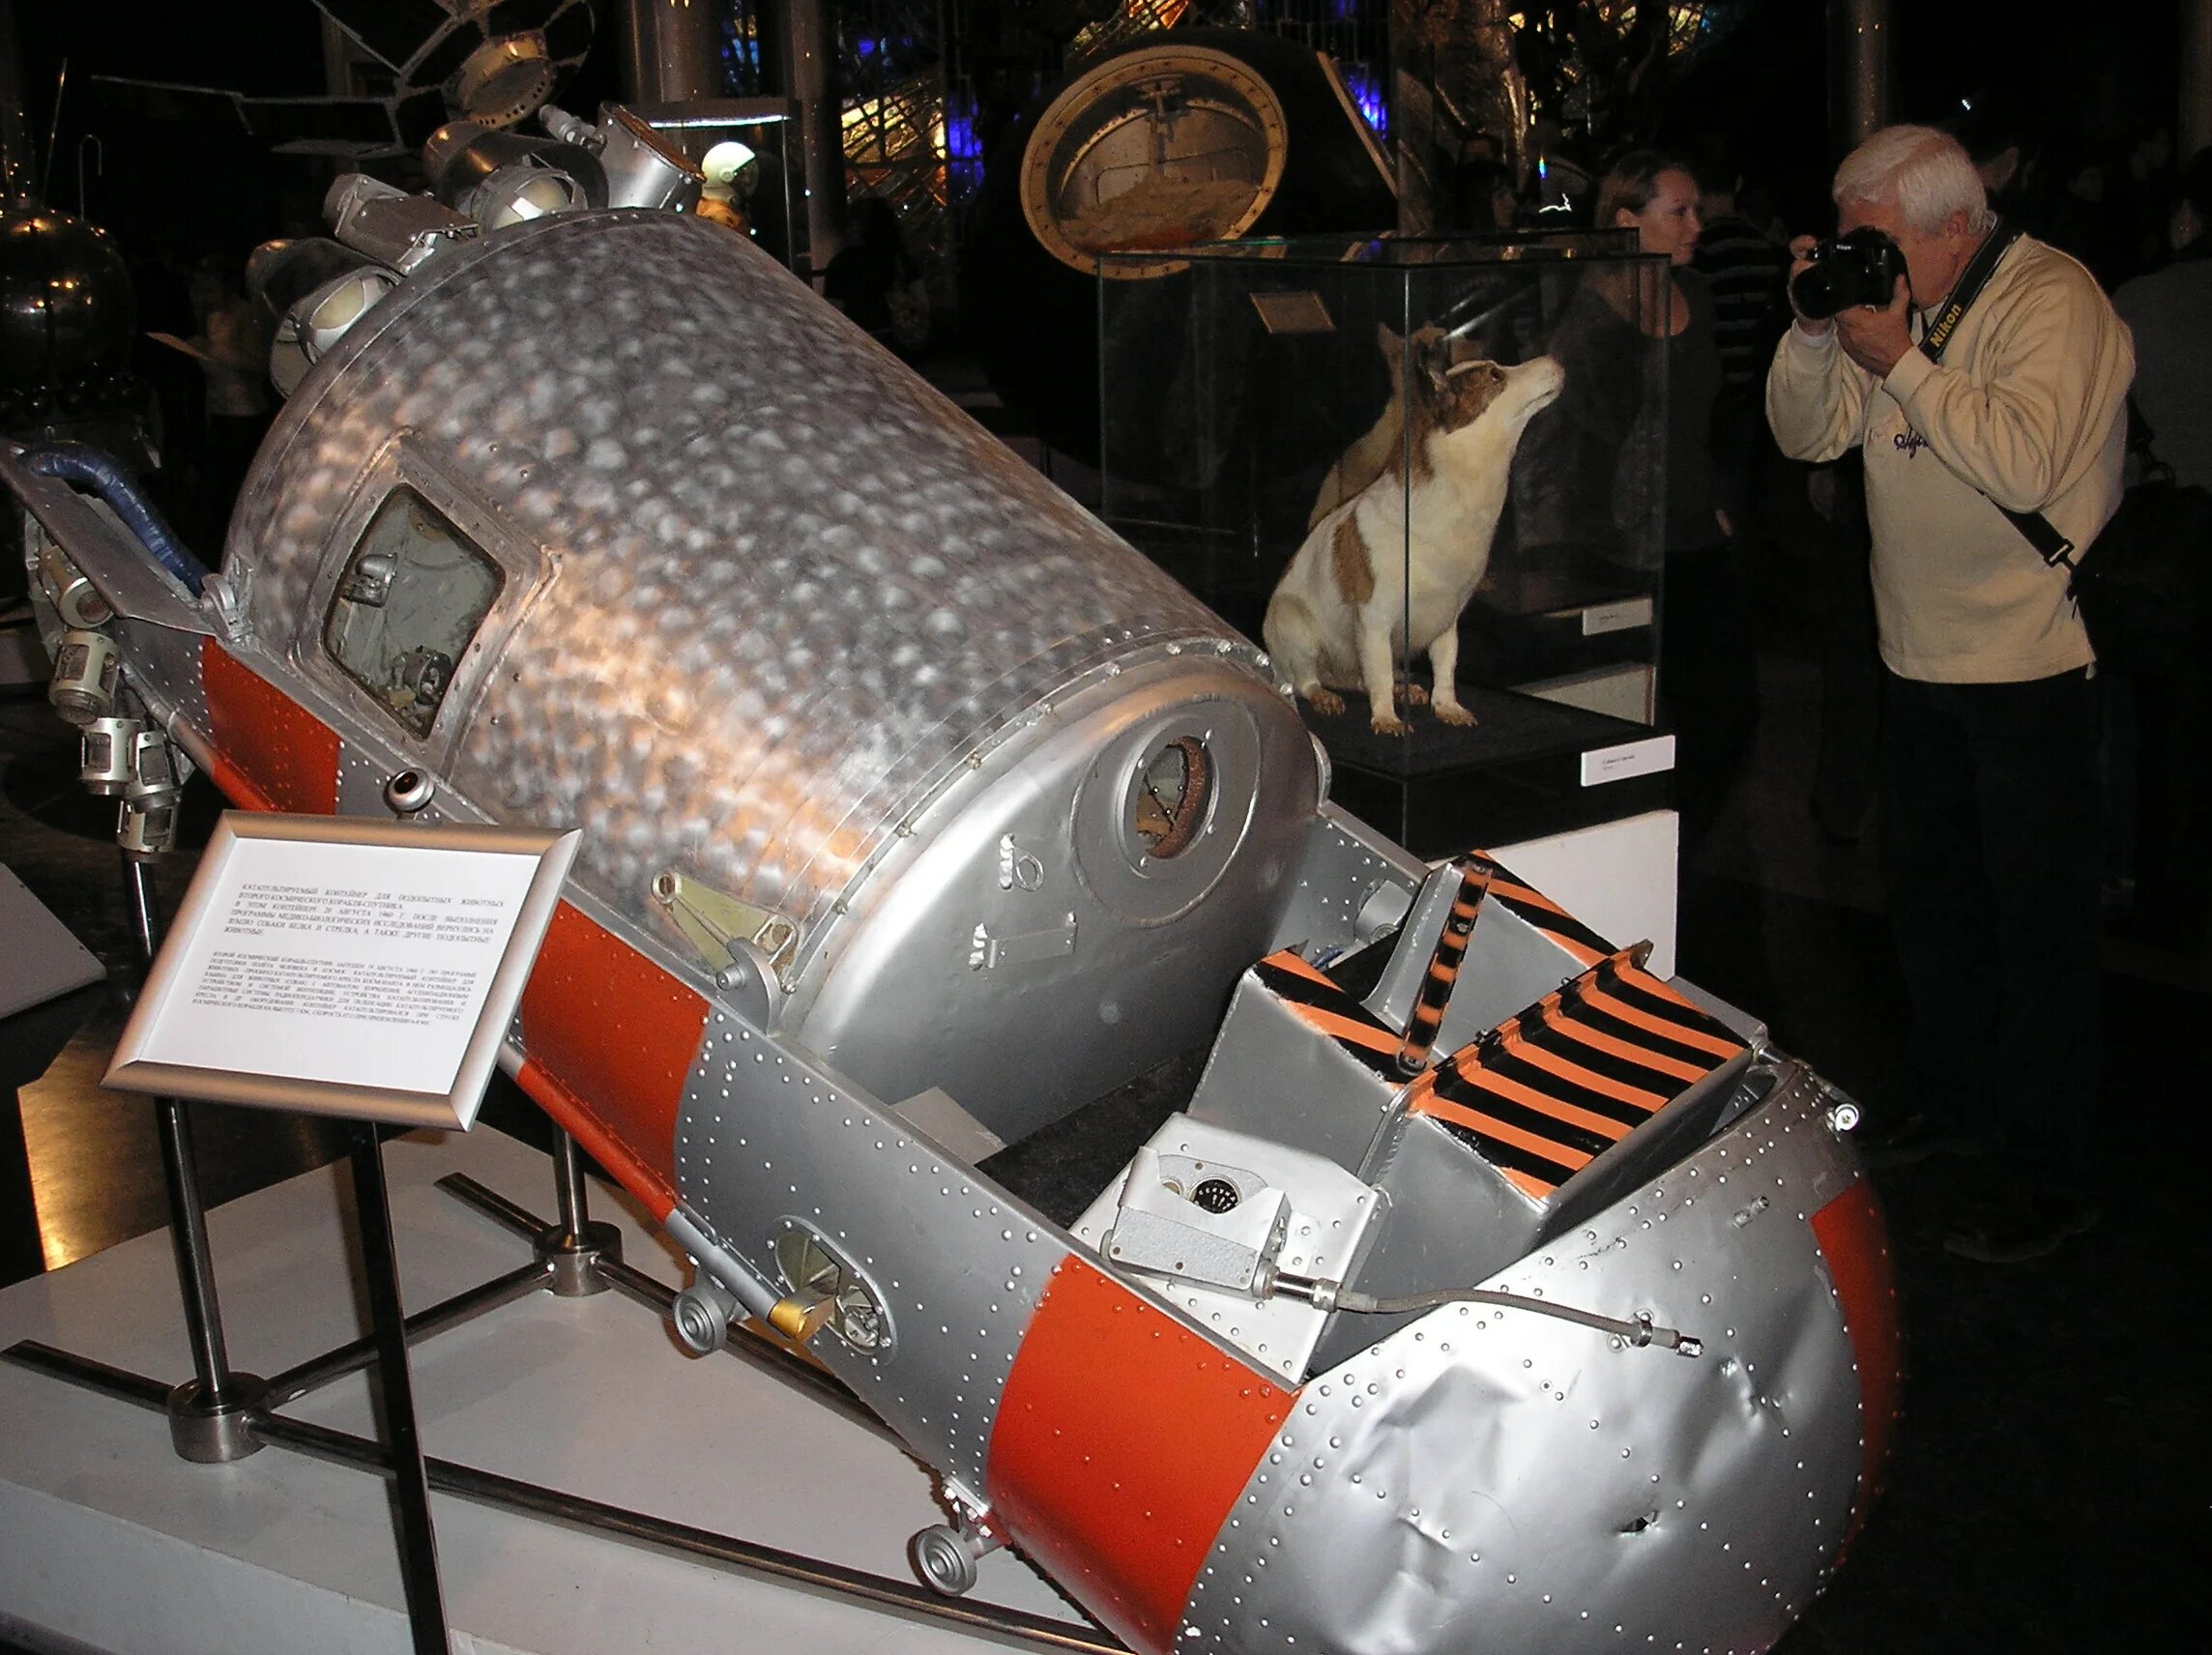 Первый межпланетный полет. Катапультируемый контейнер белки и стрелки в музее космонавтики. Спутник 5 корабль белки и стрелки. Корабль Спутник 5 с белкой и стрелкой. Спутник-5 космический аппарат.